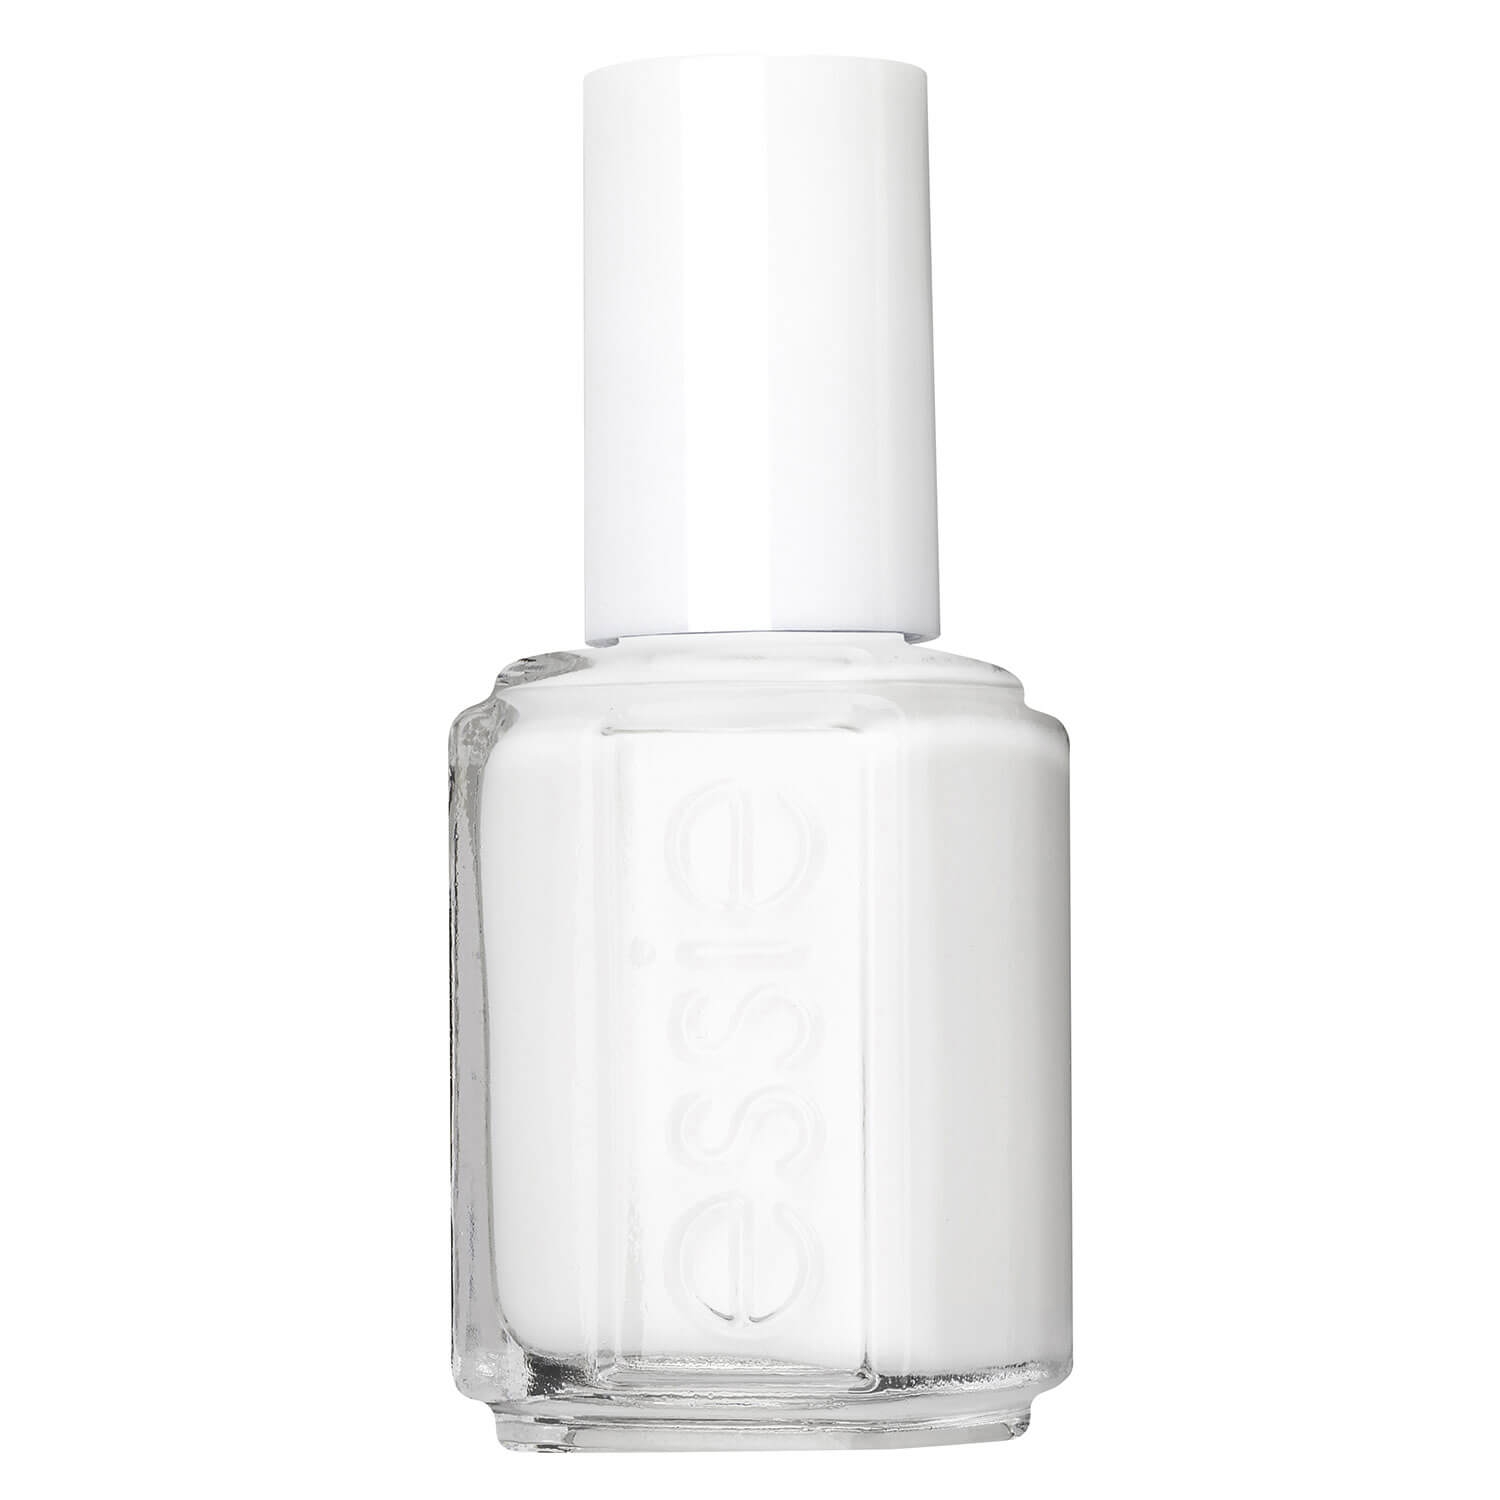 Produktbild von essie nail polish - blanc 1